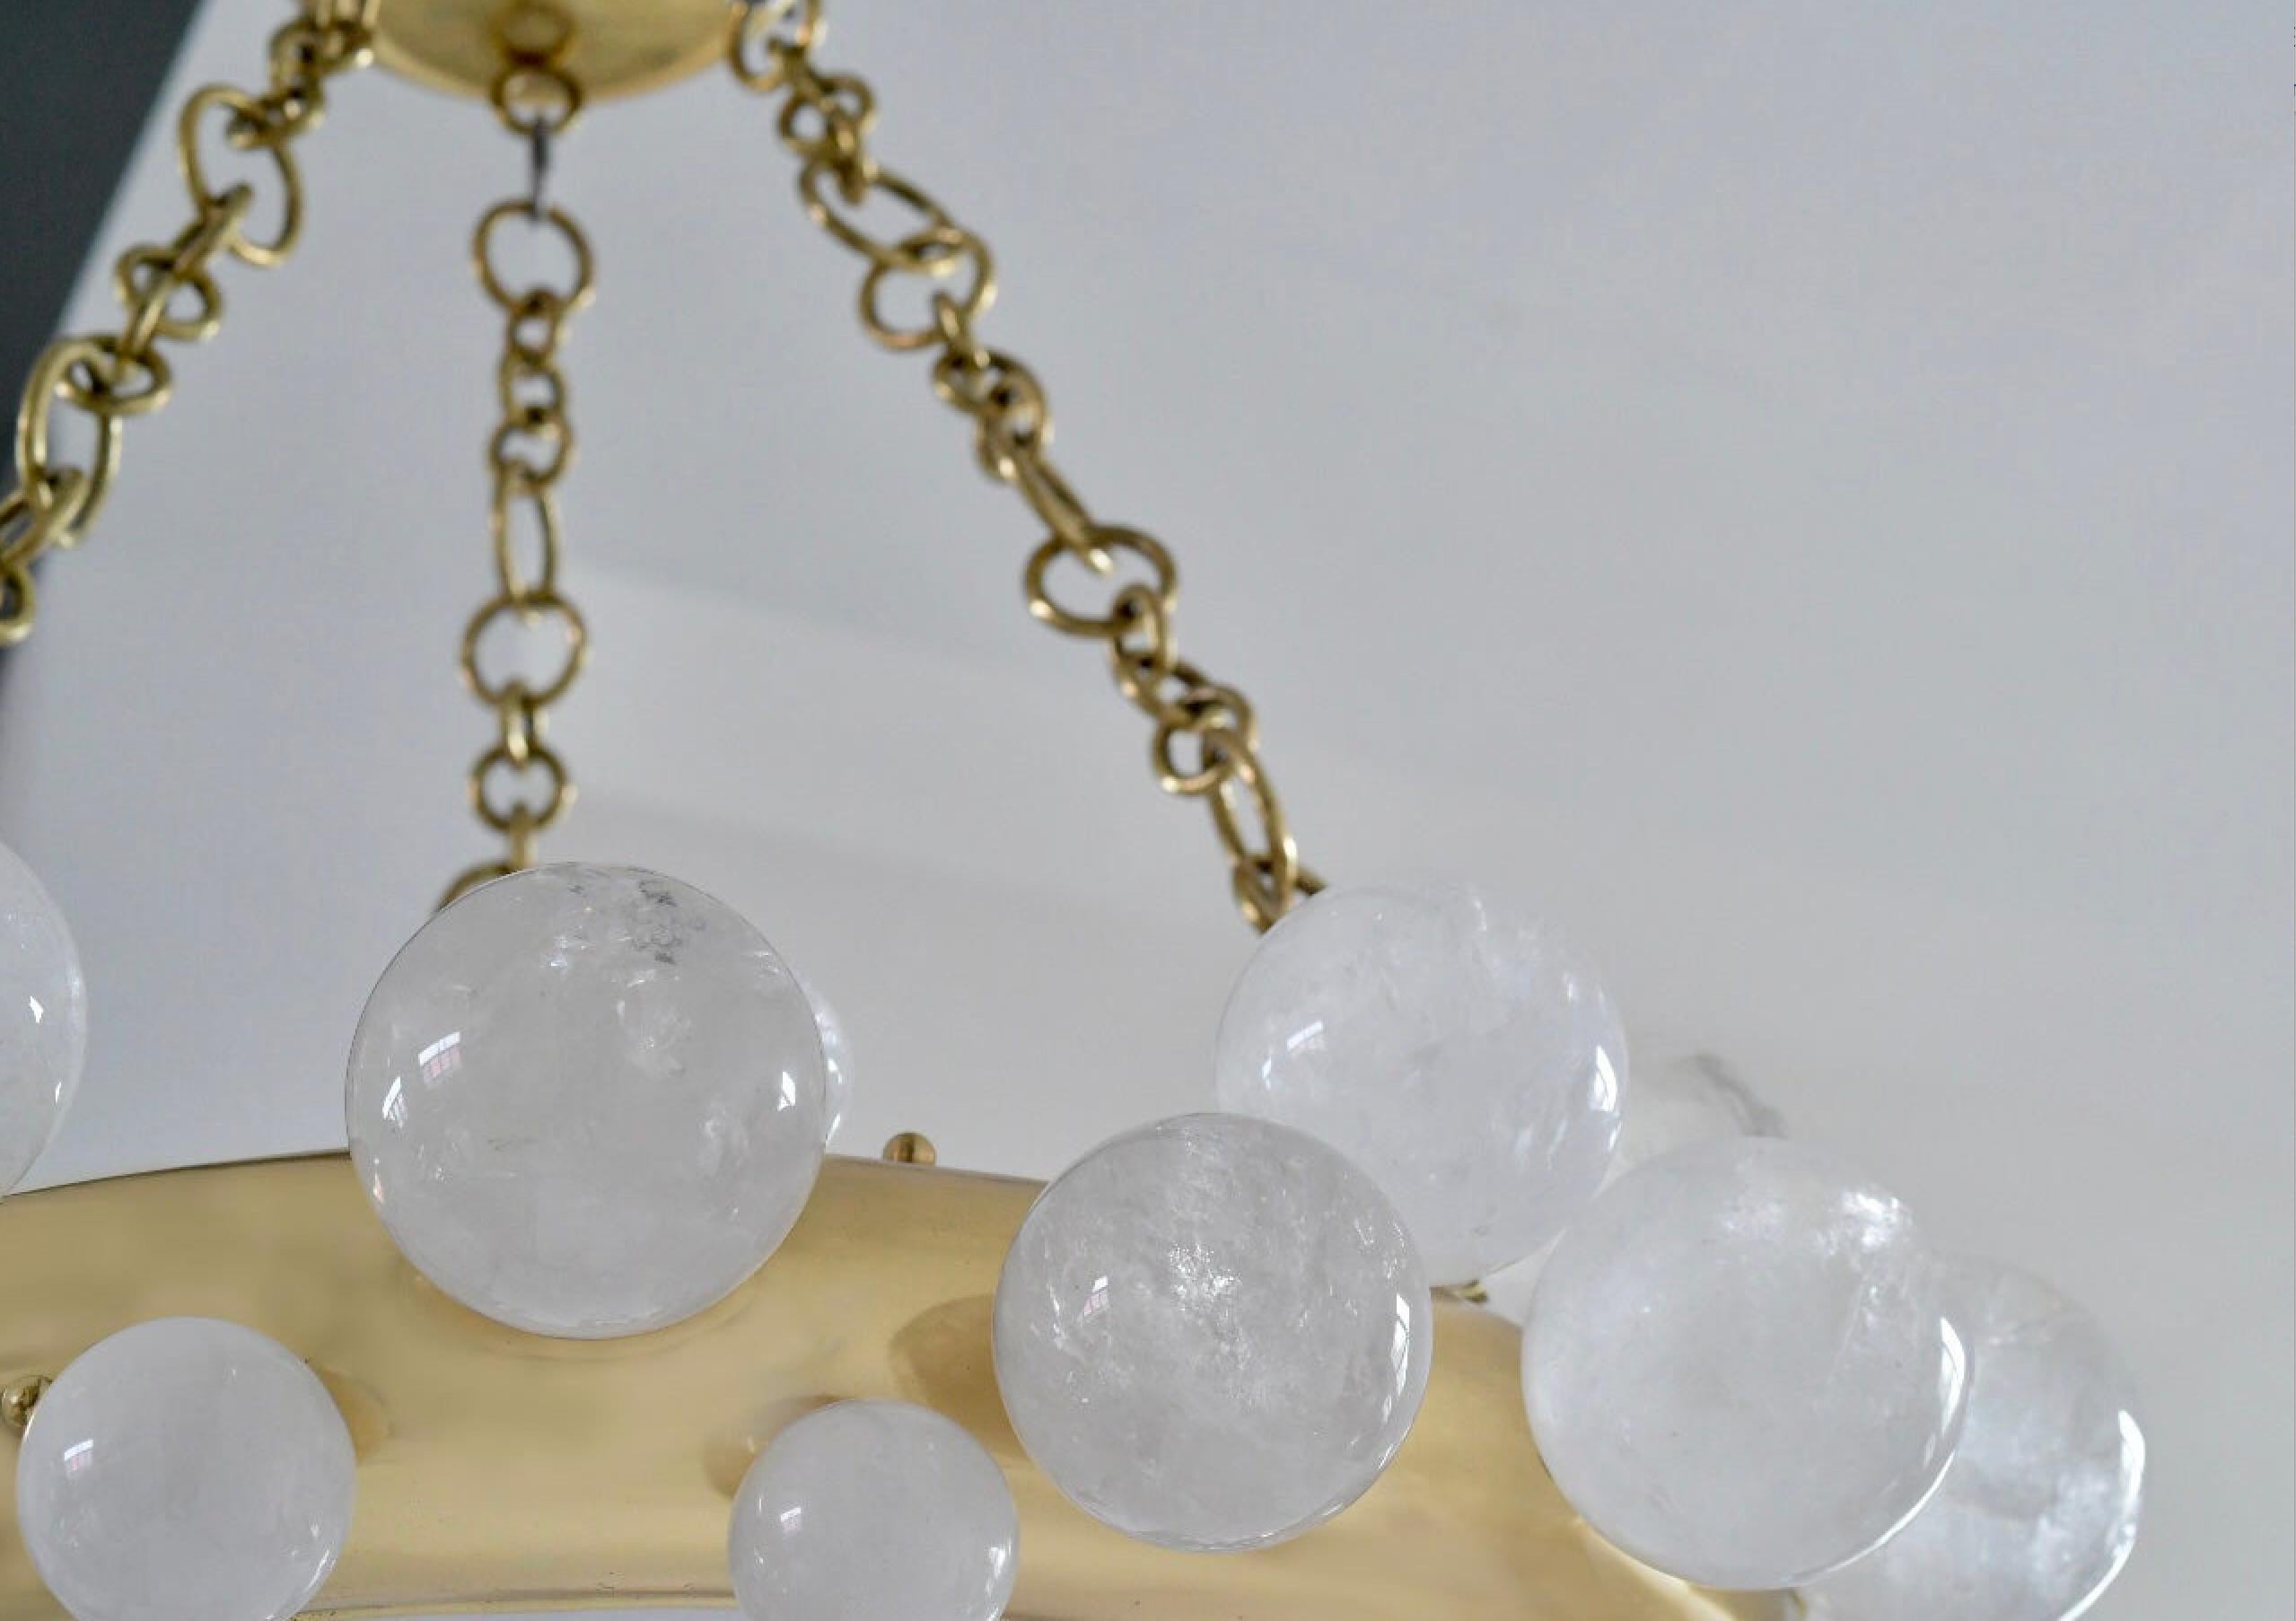 Une paire de lustres en cristal de roche à anneau de bulle avec une structure en laiton poli. Créé par Phoenix Gallery, NYC.
Chaque lustre installe 16 douilles. Utilisez des ampoules LED chaudes de 60w. Total de 960w. 
Taille et finition du métal